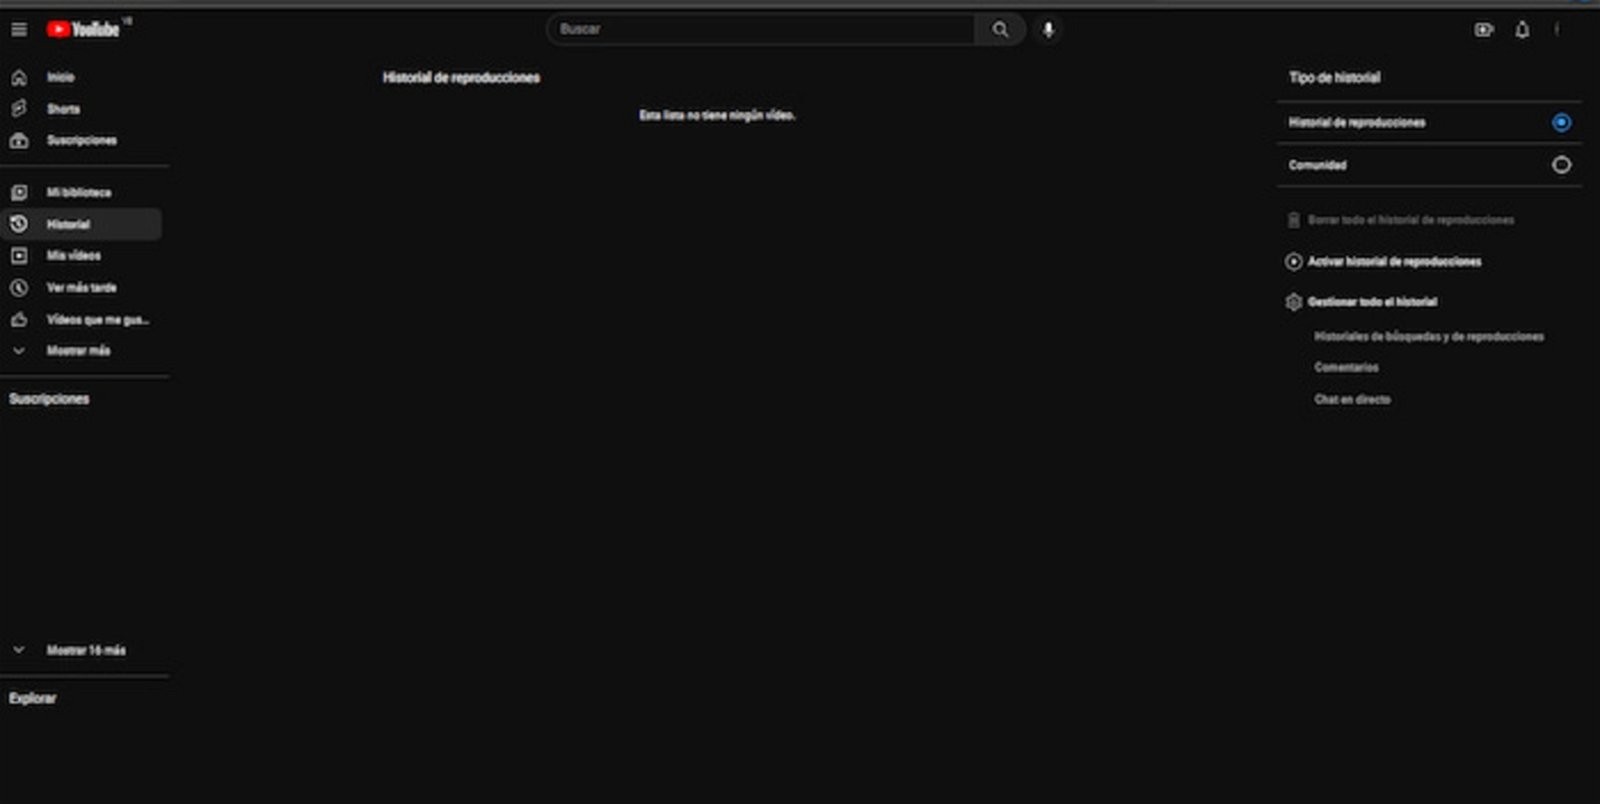 Para desactivar el historial de reproducciones de YouTube, debes hacerlo desde la versión web